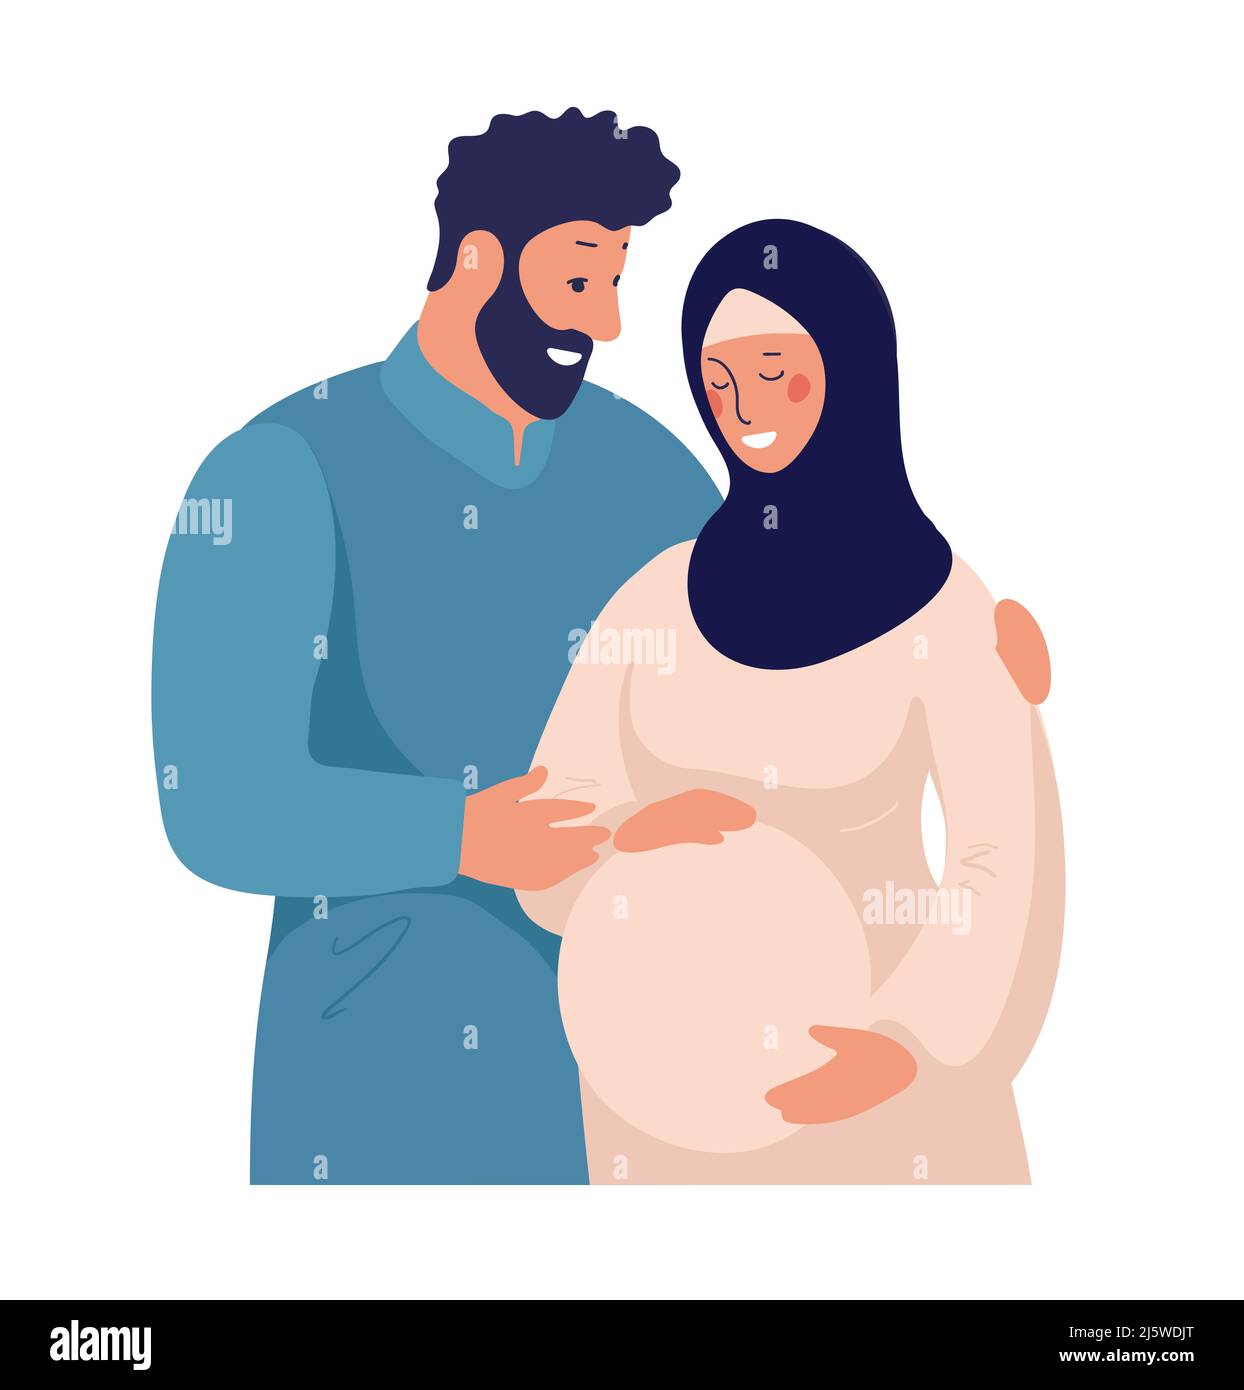 Une famille musulmane traditionnelle attend la naissance d'un enfant. Arabe couple marié, femme enceinte dans un hijab. Illustration vectorielle plate isolée sur Illustration de Vecteur